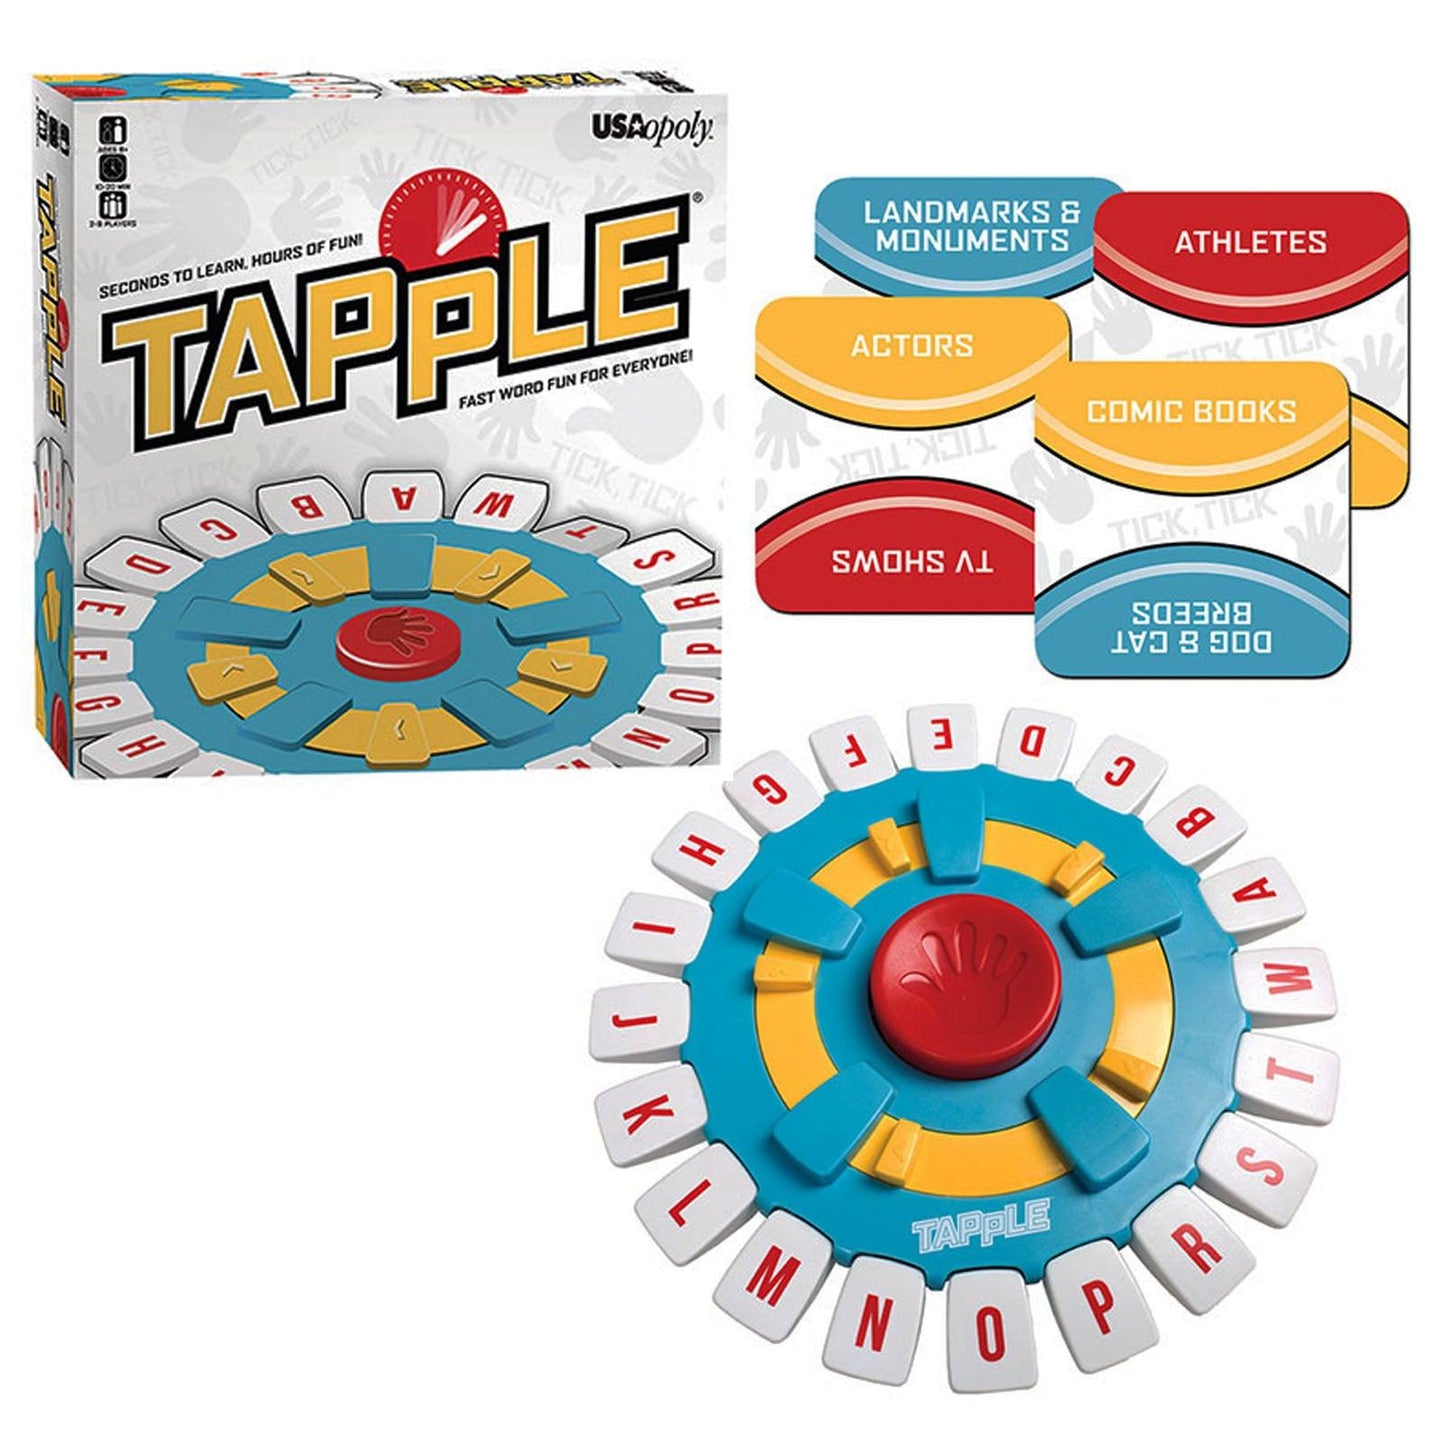 Tapple® Fast Word Fun For Everyone! - Loomini